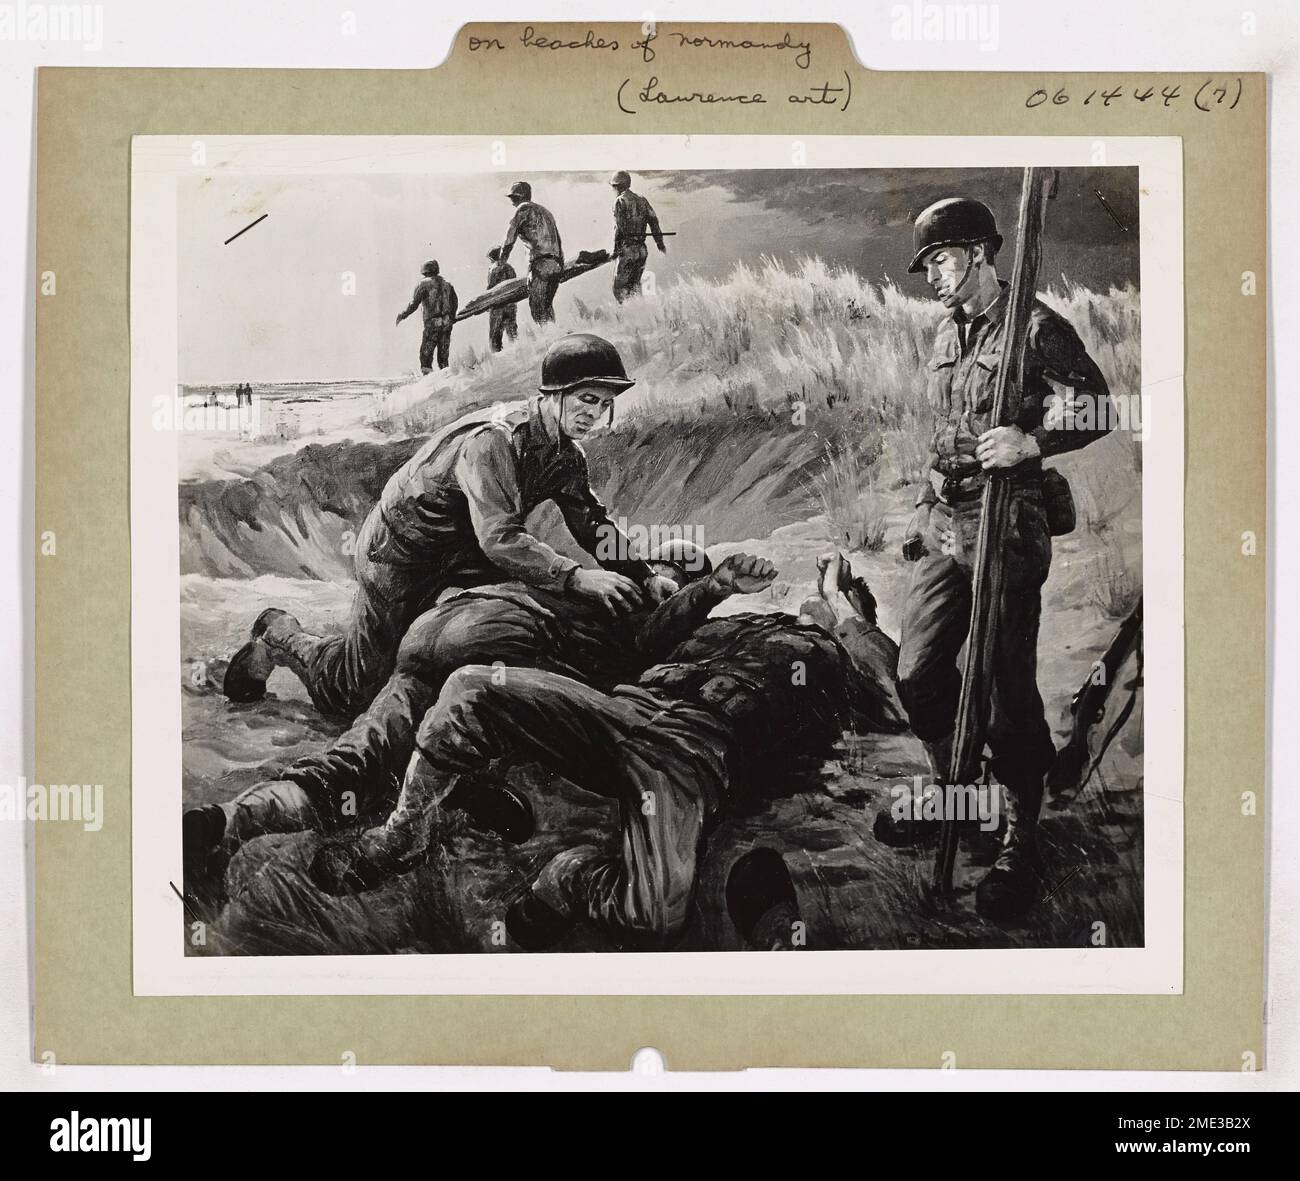 Sulle spiagge della Normandia, sono caduti. Questa immagine raffigura soldati americani feriti sulle spiagge della Normandia durante il D-Day, dipinta dall'artista della Guardia Costiera William Goadby Lawrence. Foto Stock